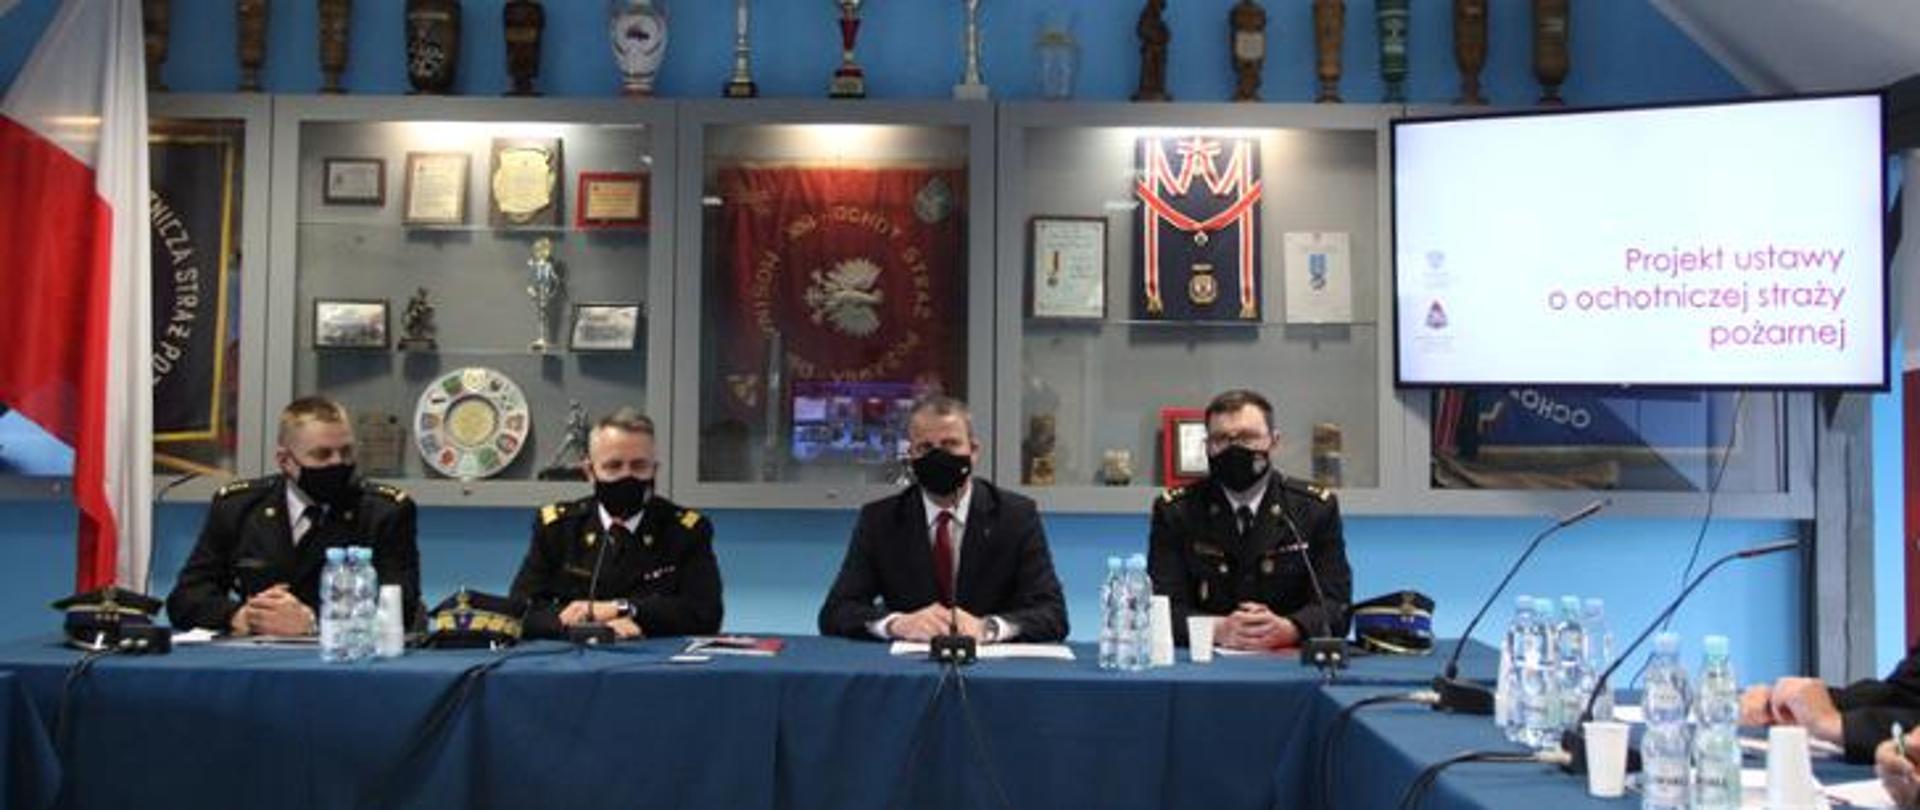 Na zdjęciu widać czterech strażaków za stołem prezydialnym w trakcie spotkania